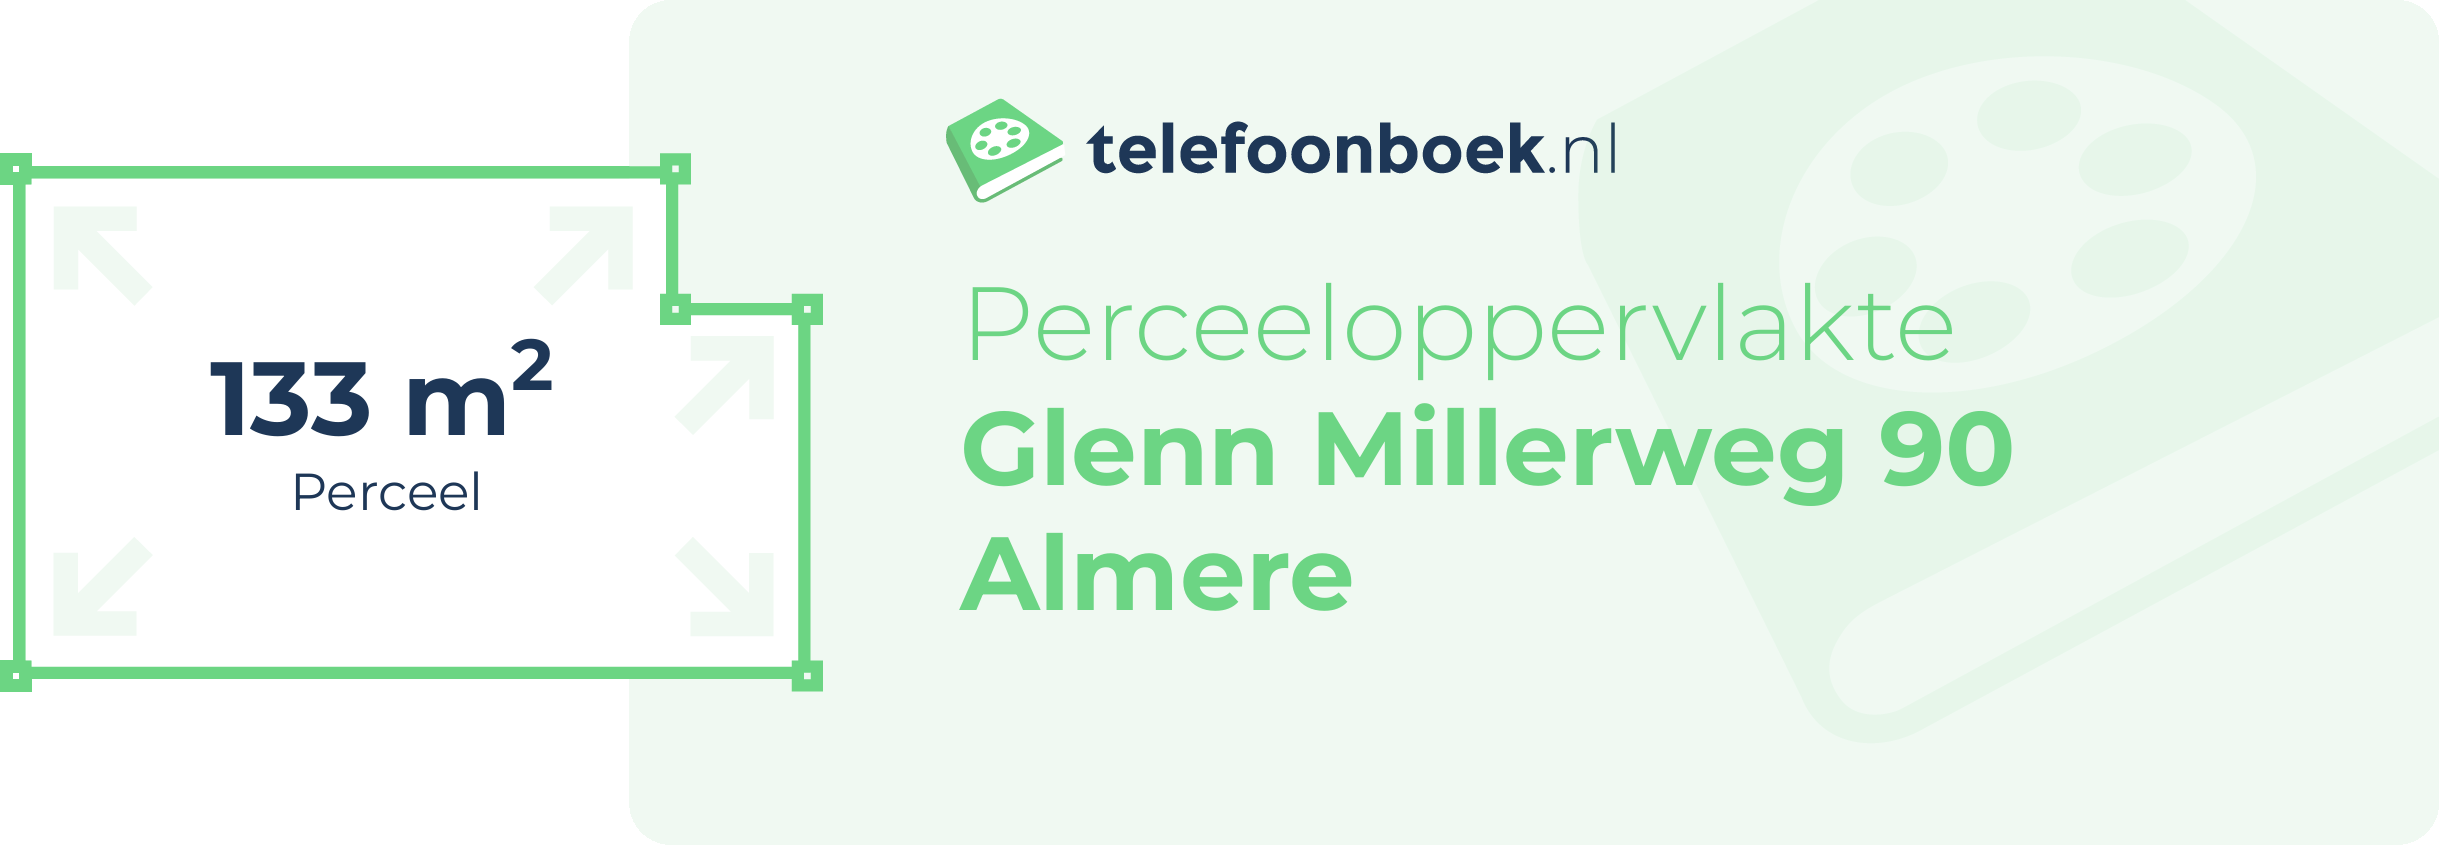 Perceeloppervlakte Glenn Millerweg 90 Almere